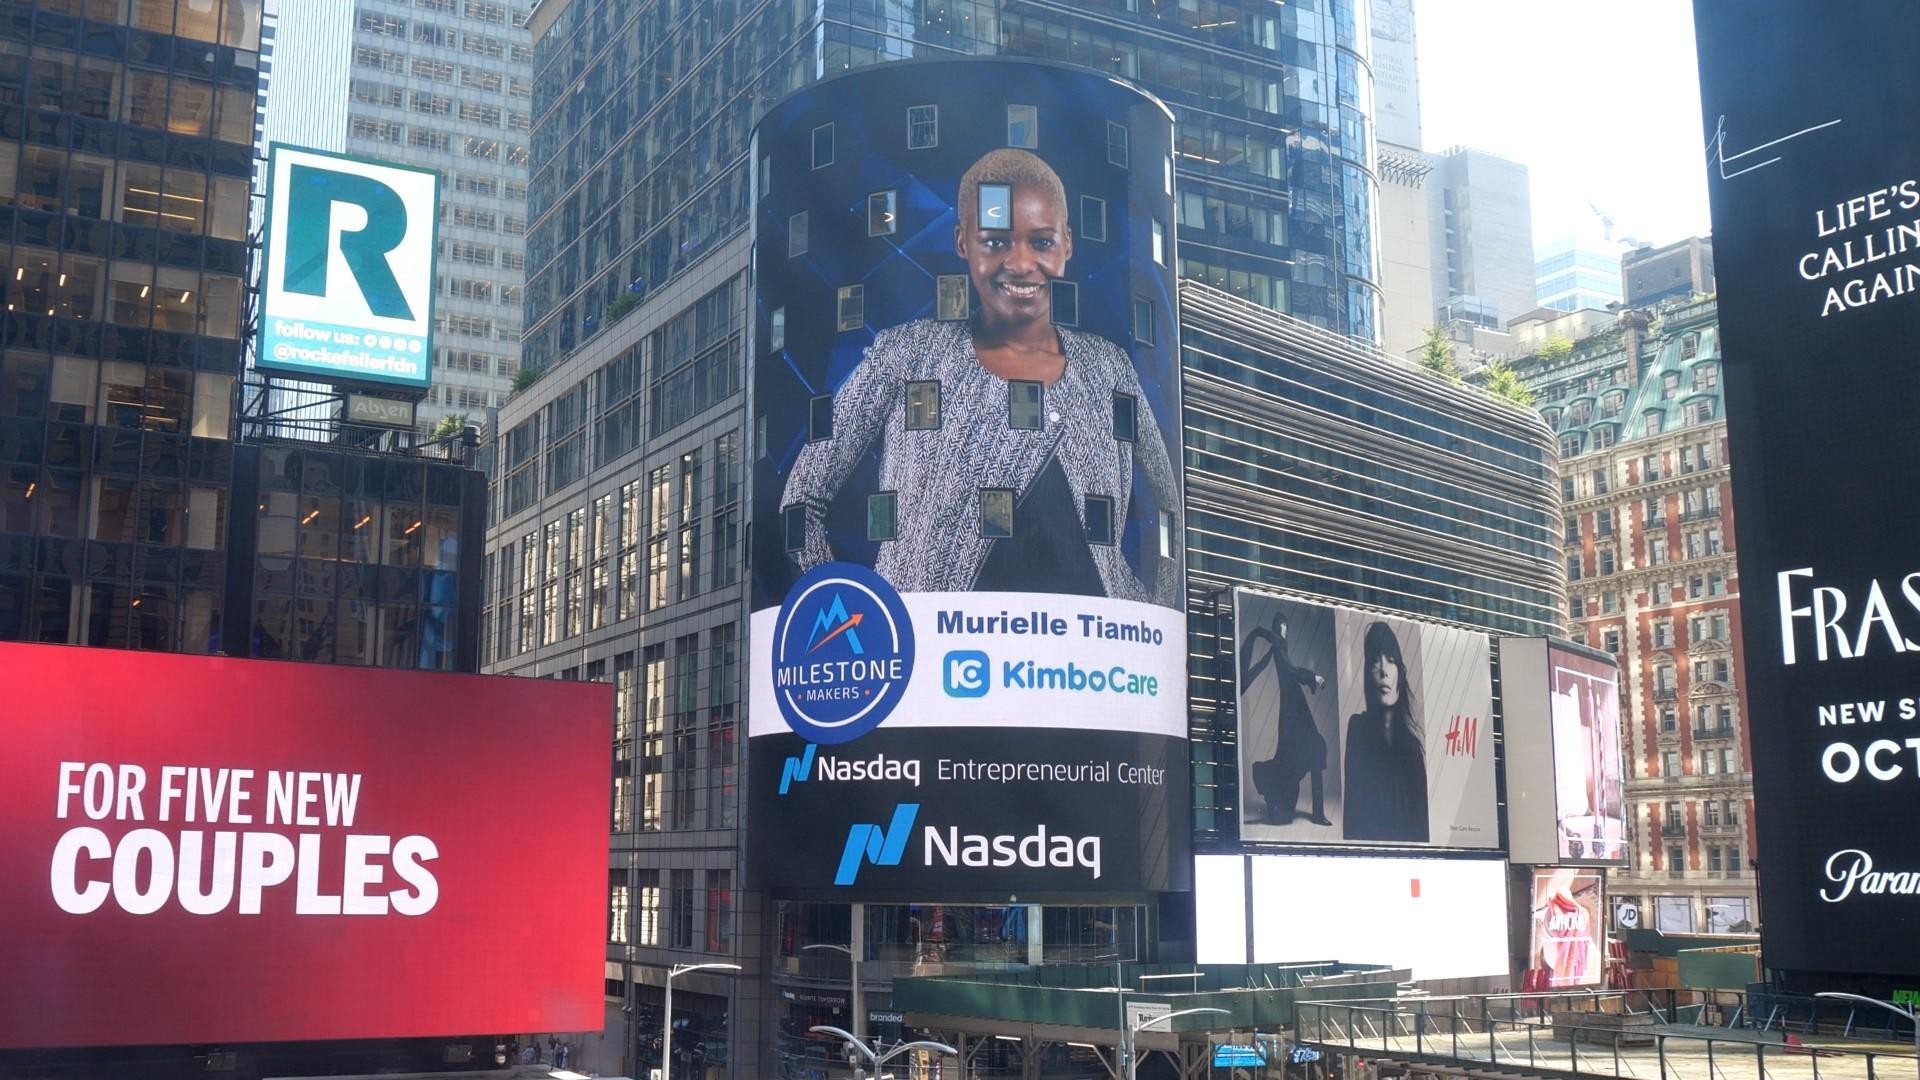 La société romande KimboCare part à la conquête du Nasdaq sur Times Square, New York.